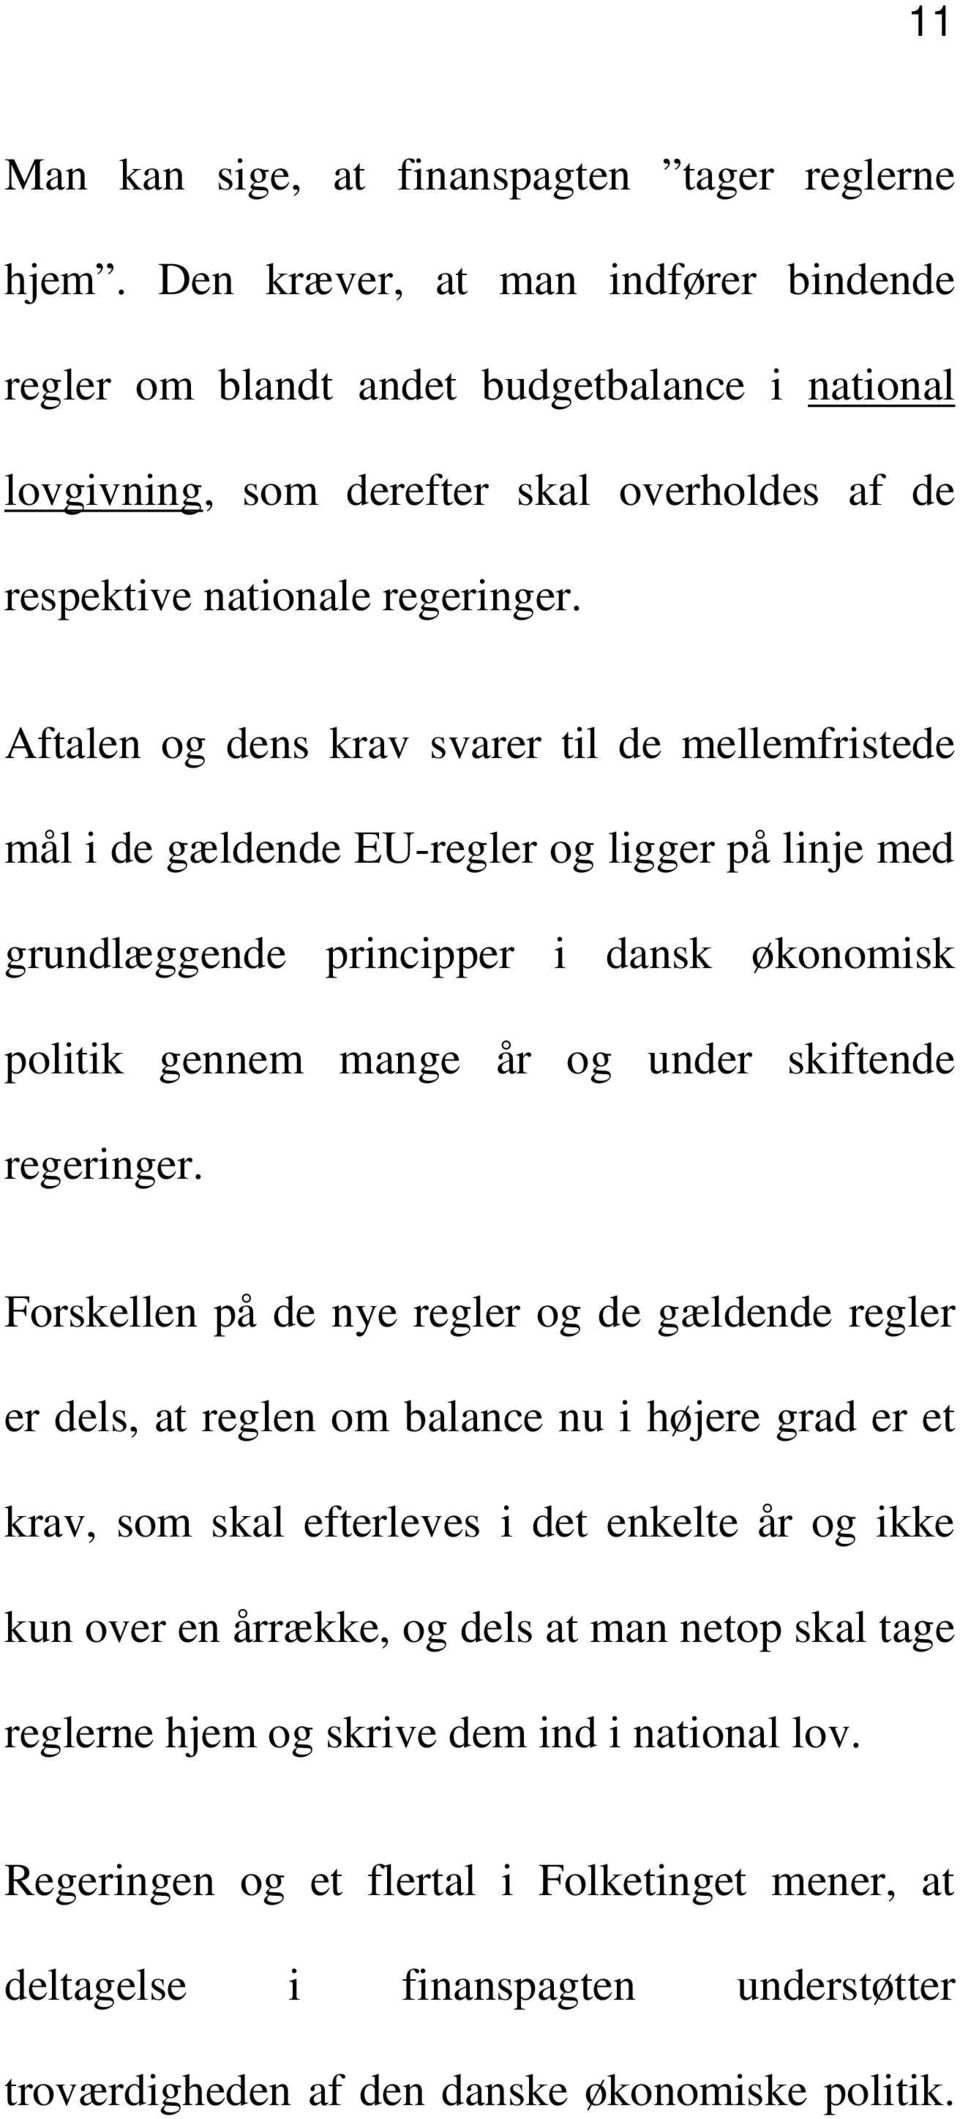 Aftalen og dens krav svarer til de mellemfristede mål i de gældende EU-regler og ligger på linje med grundlæggende principper i dansk økonomisk politik gennem mange år og under skiftende regeringer.